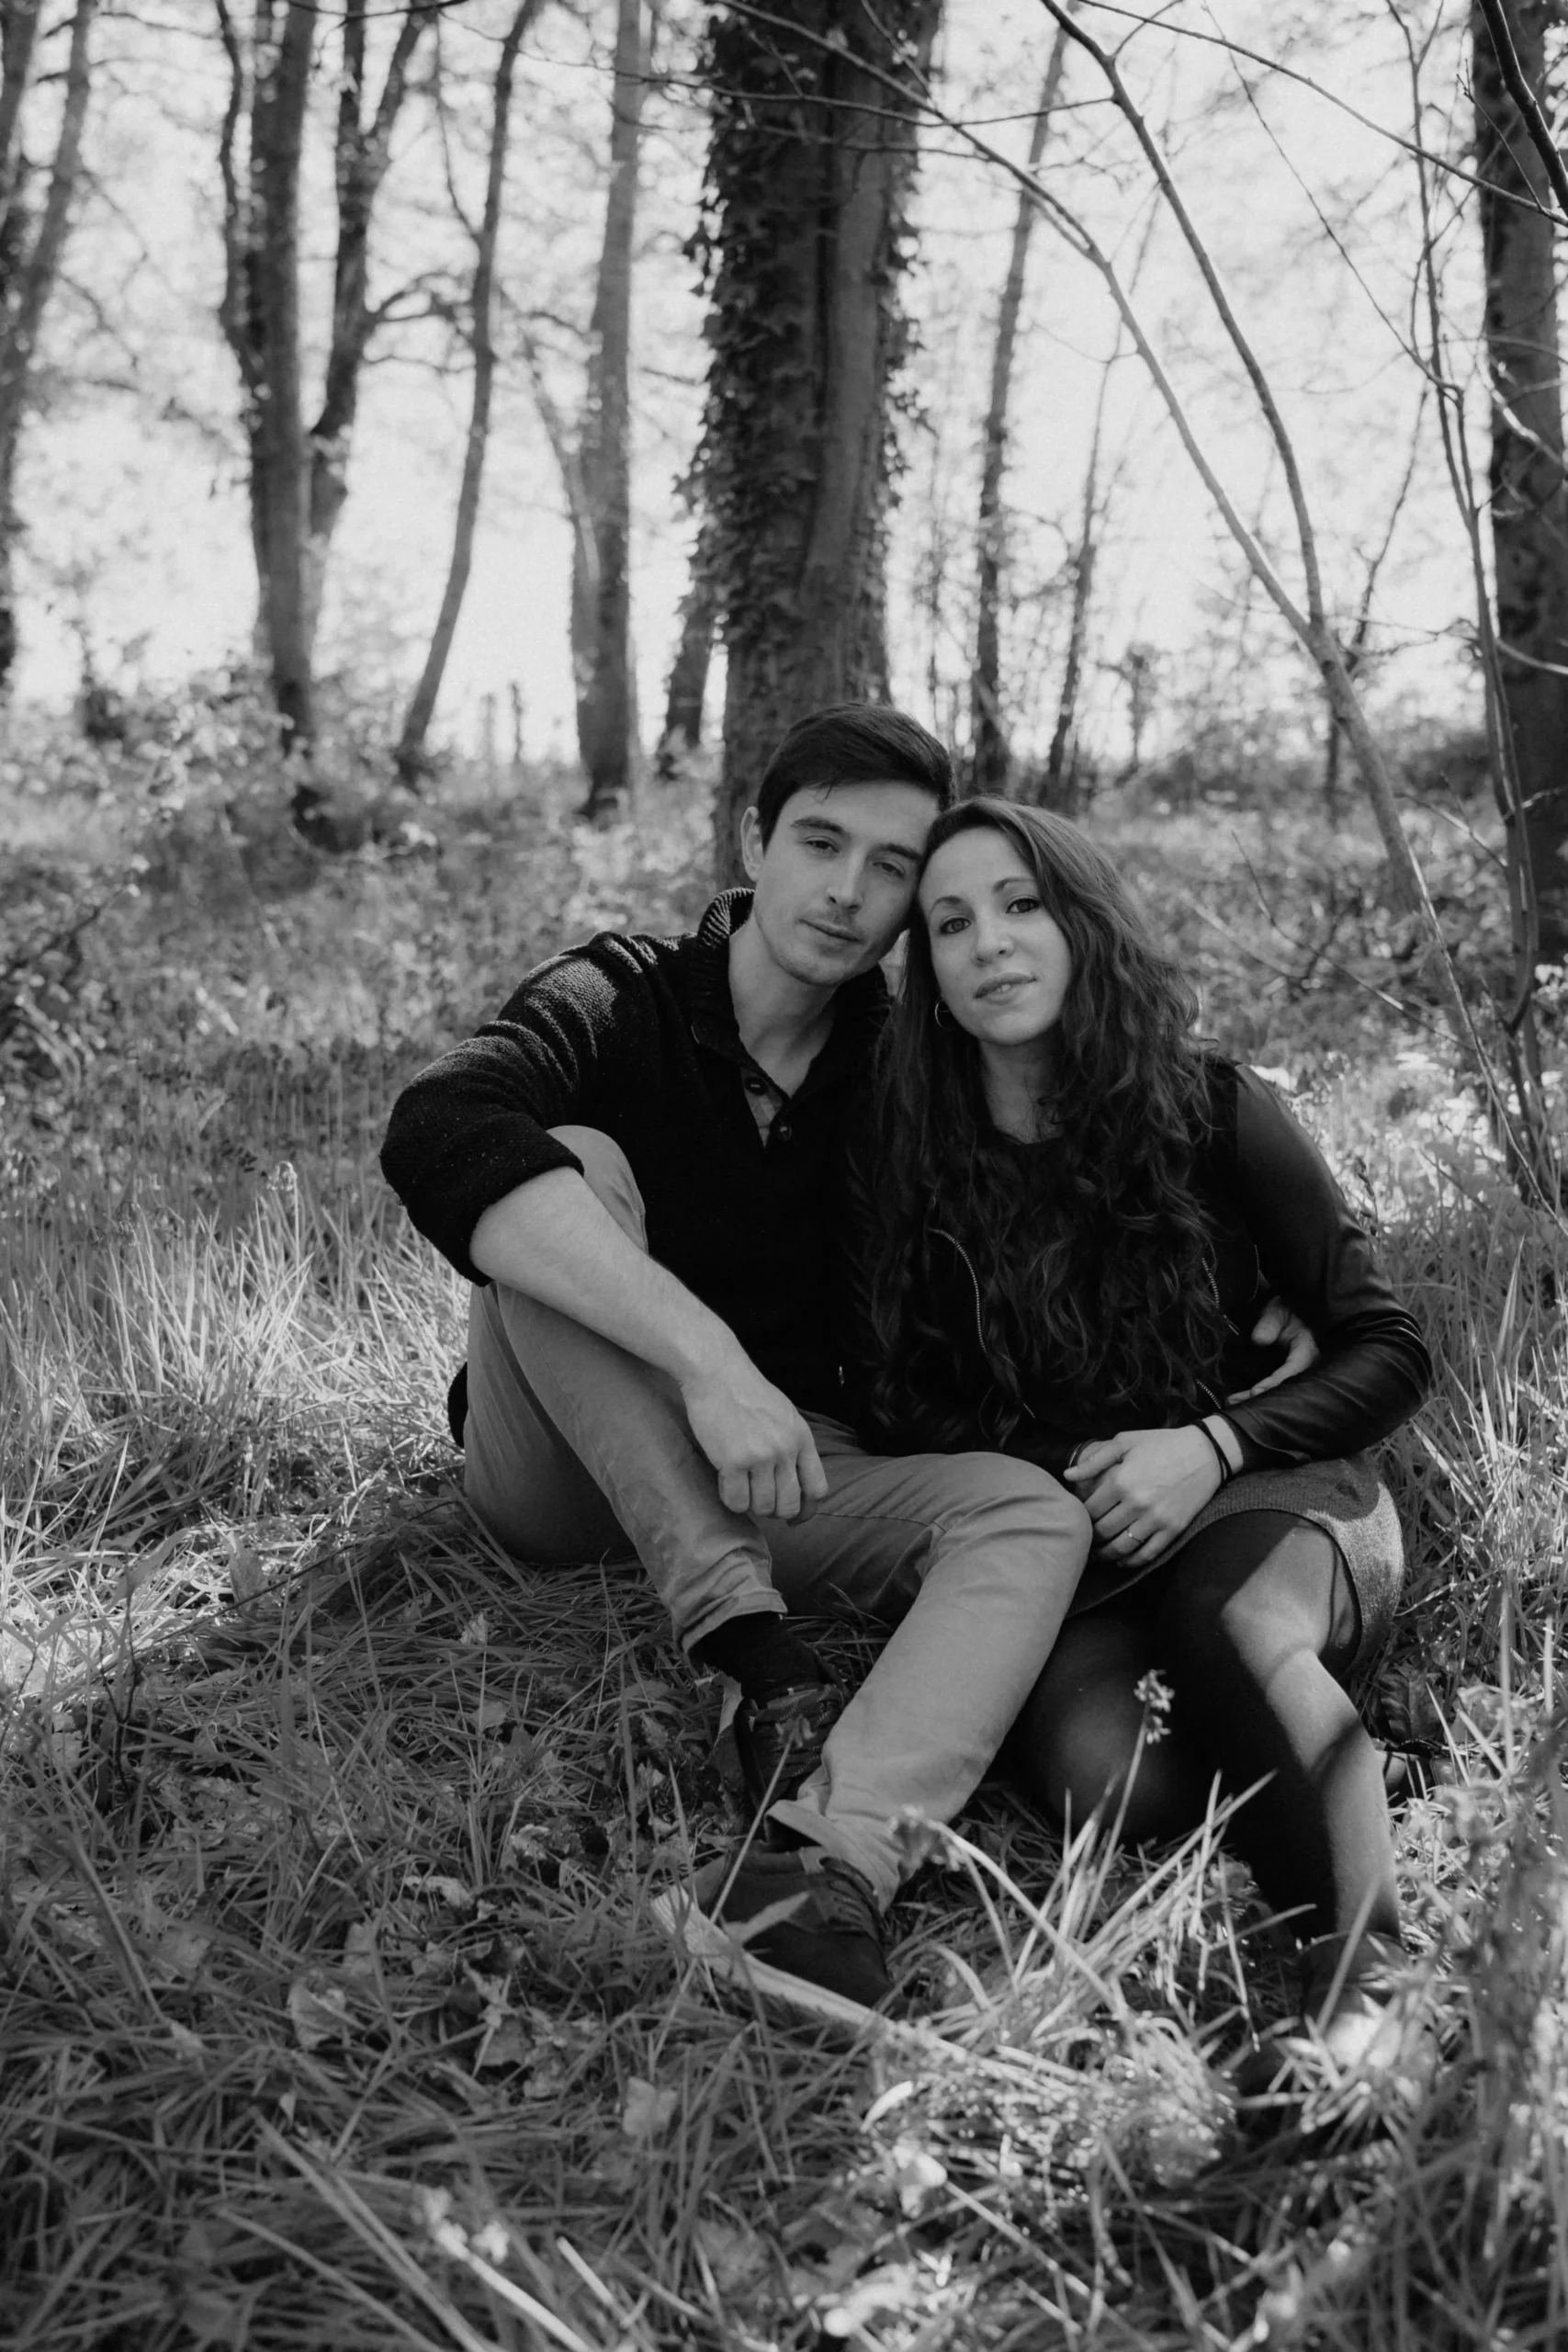 Séance d'engagement. Photographe Mariage. Couple de futurs mariés dans une forêt. Photographie en noir et blanc.